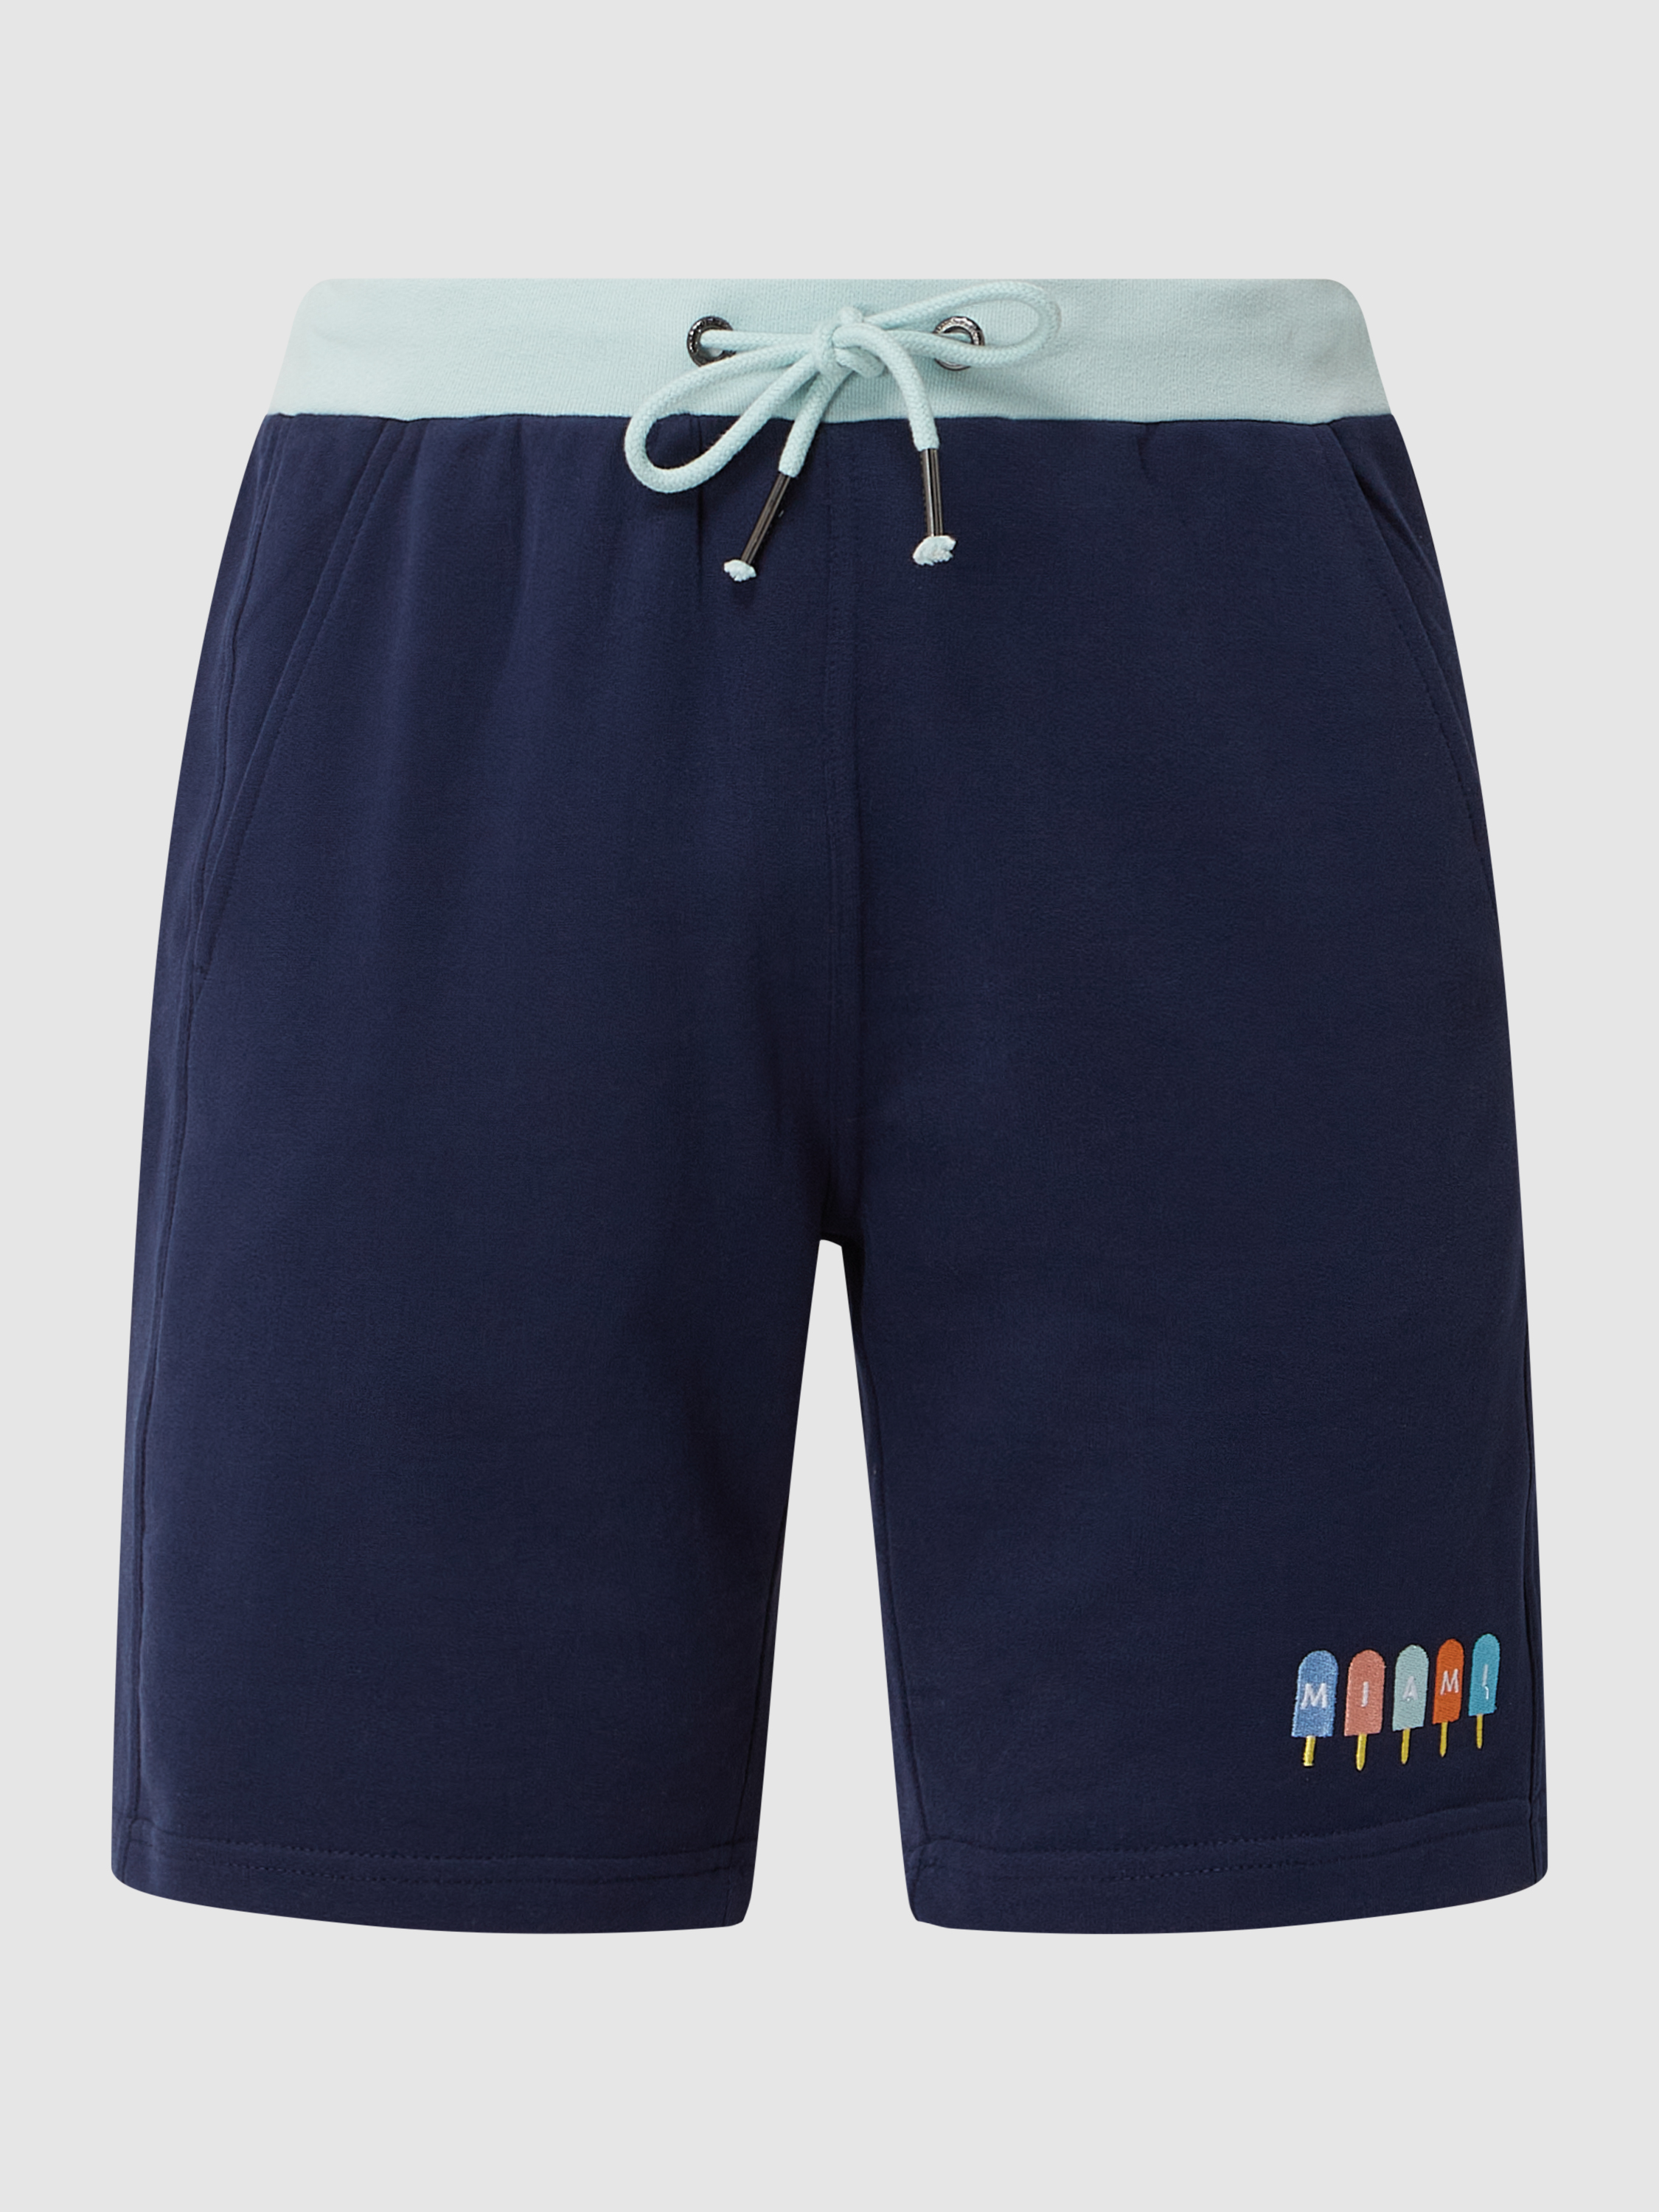 Трикотажные шорты мужские Colours & sons 1553803 синие XL (доставка из-за рубежа)